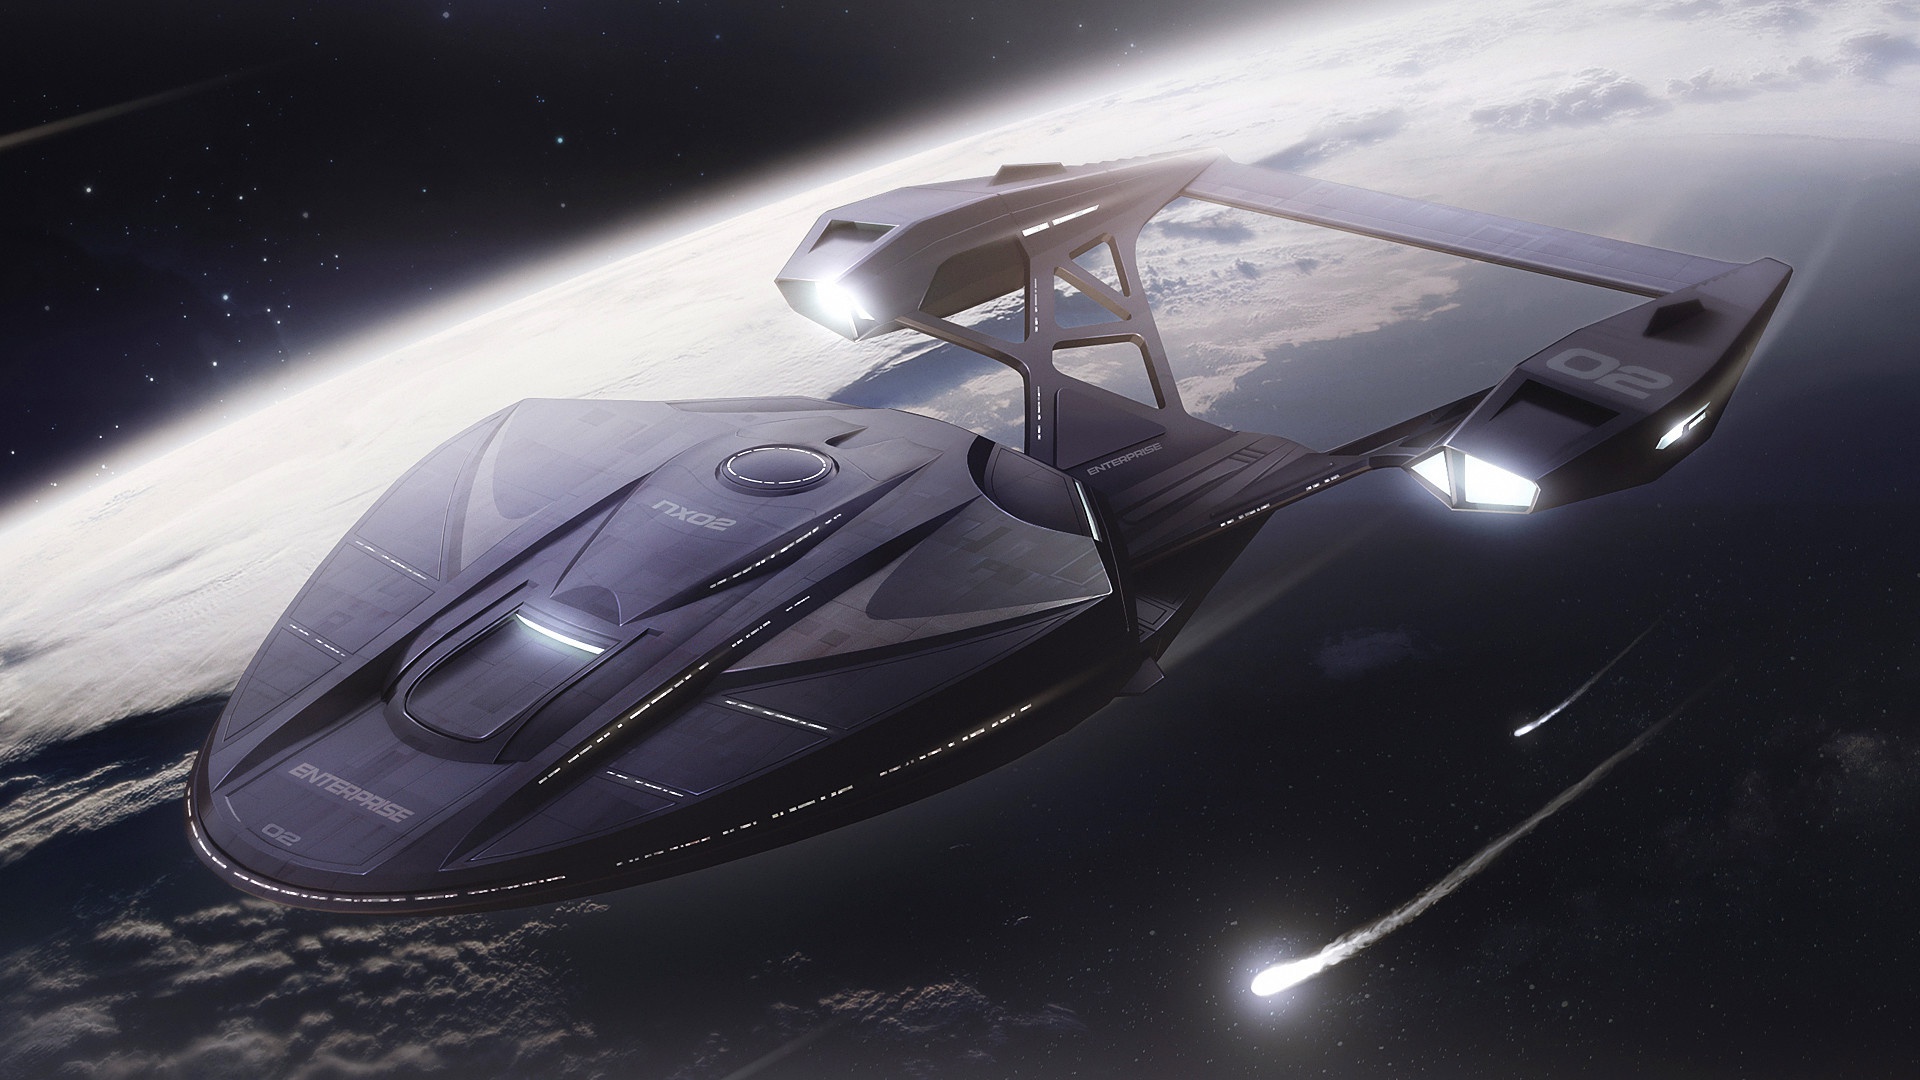 General 1920x1080 Star Trek vehicle science fiction digital art spaceship